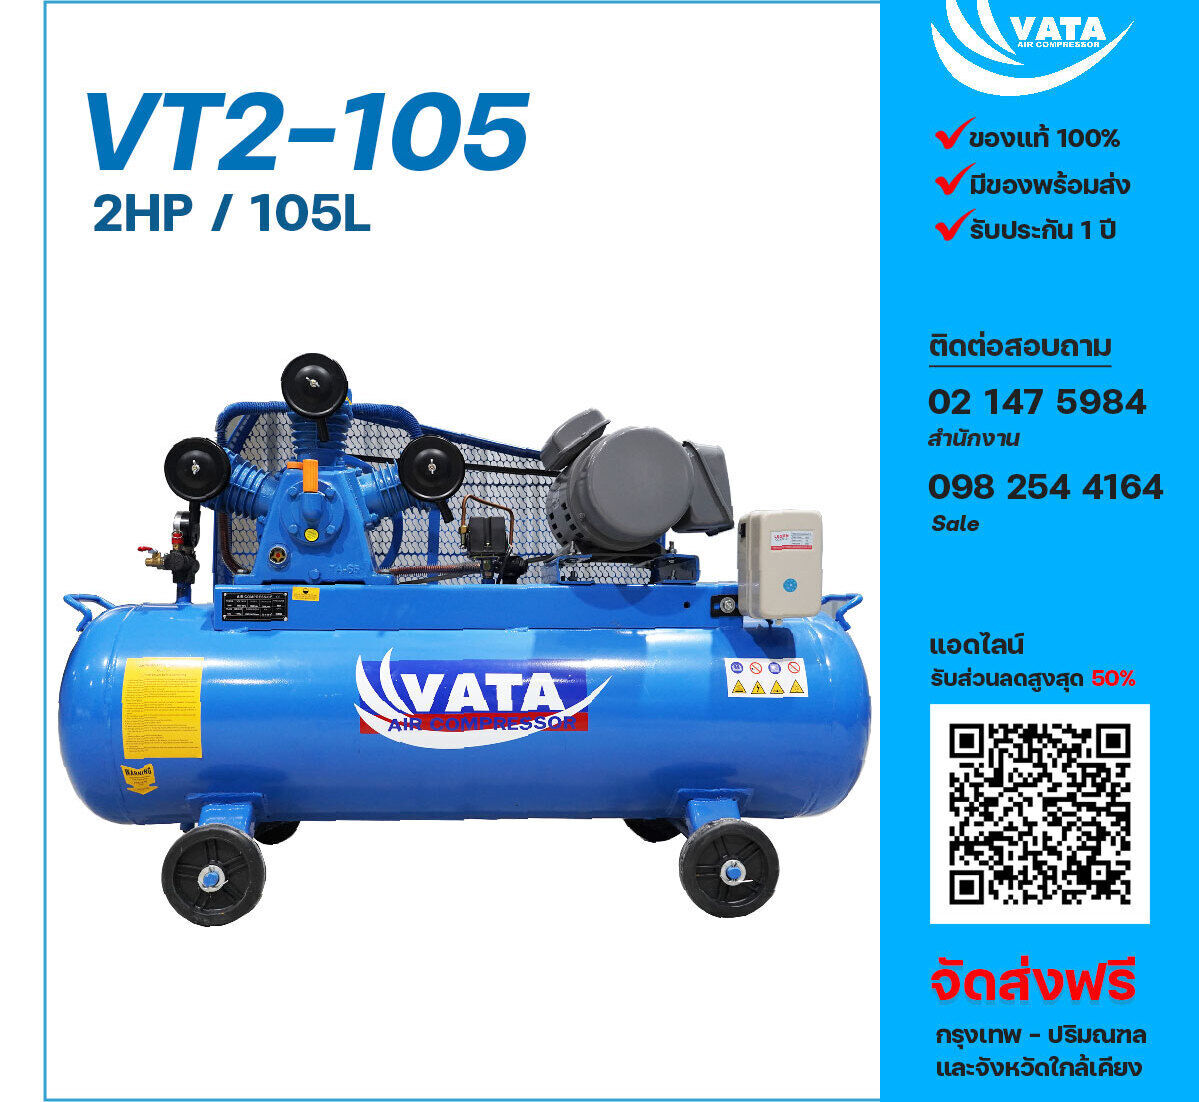 ปั๊มลมวาตะ VATA VT2-105 220V ปั๊มลมลูกสูบ ขนาด 3 สูบ 2 แรงม้า 105 ลิตร VATA พร้อมมอเตอร์ ไฟ 220V ส่งฟรี กรุงเทพฯ-ปริมณฑล รับประกัน 1 ปี